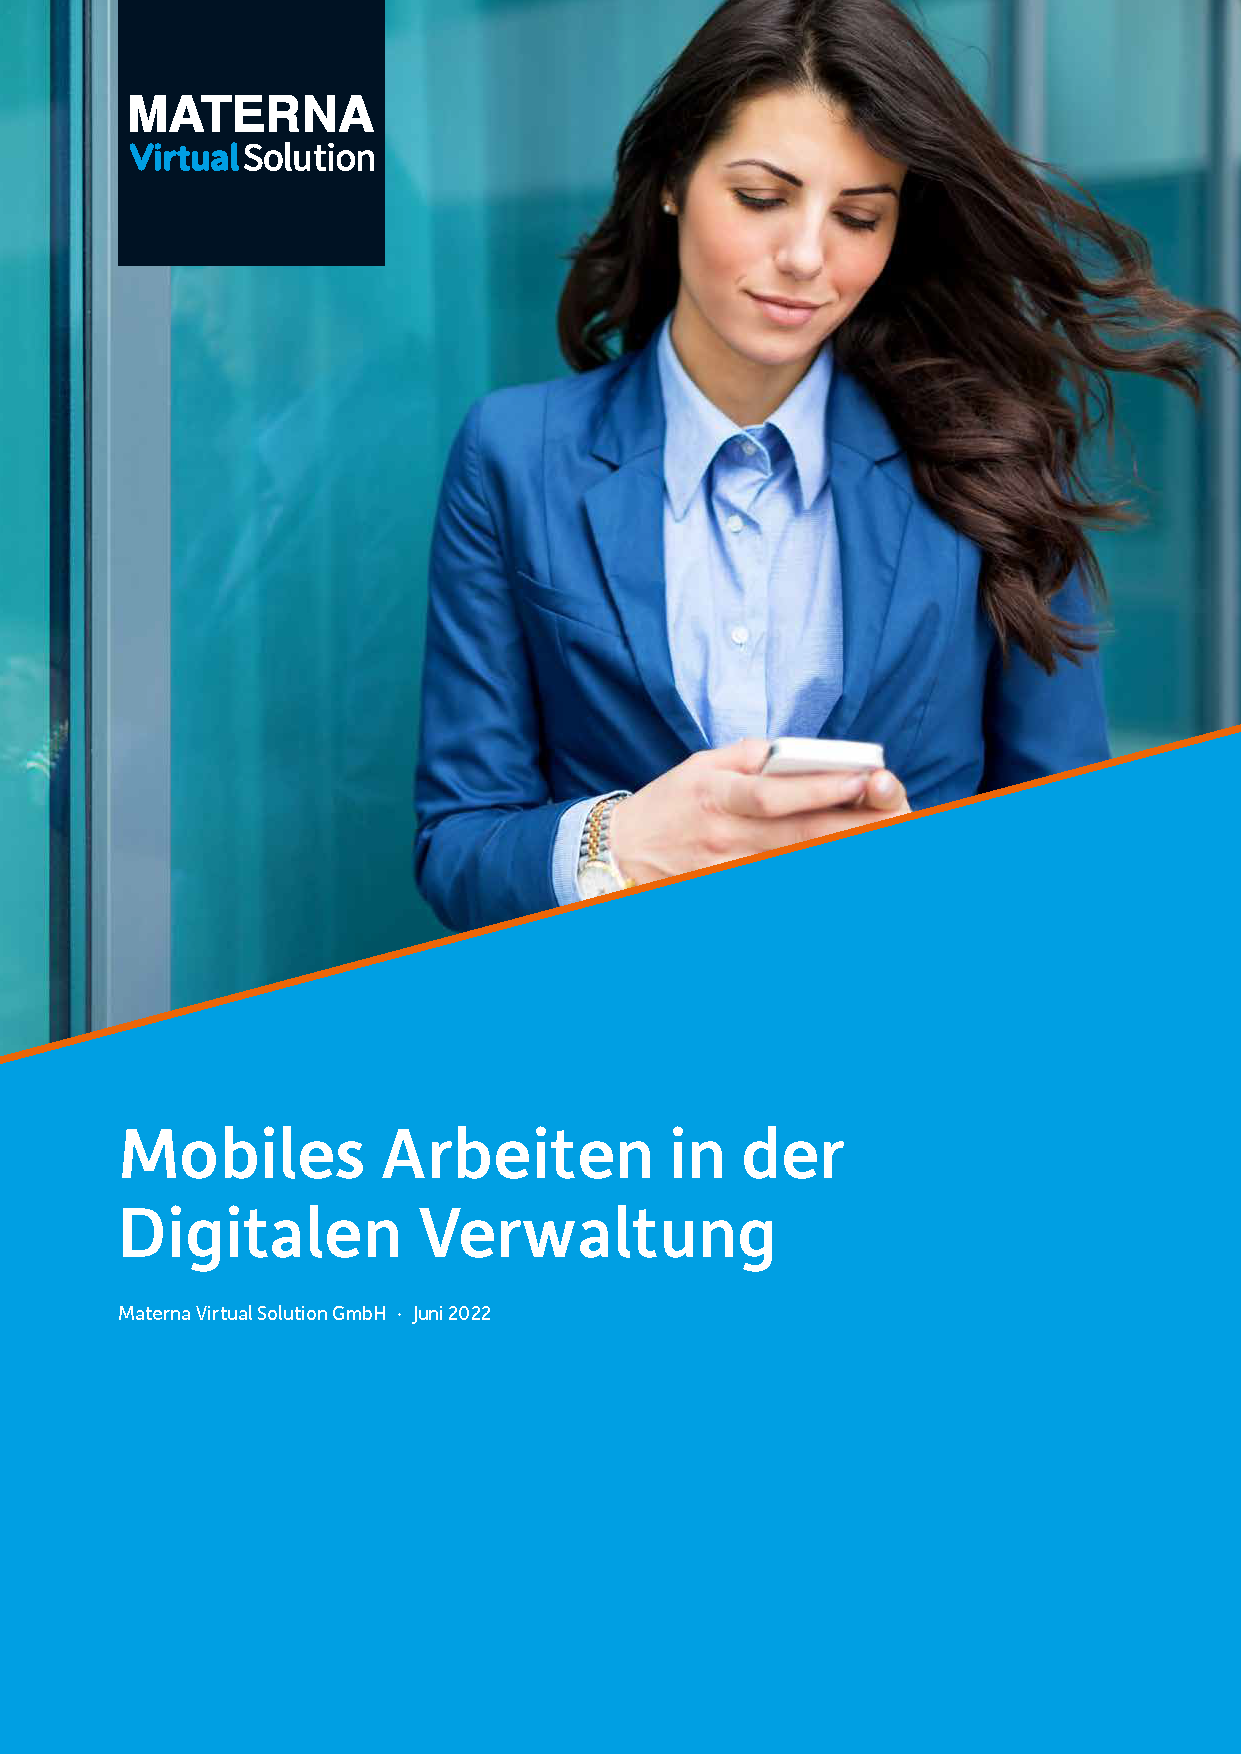 Whitepaper "Mobiles Arbeiten in der Digitalen Verwaltung"